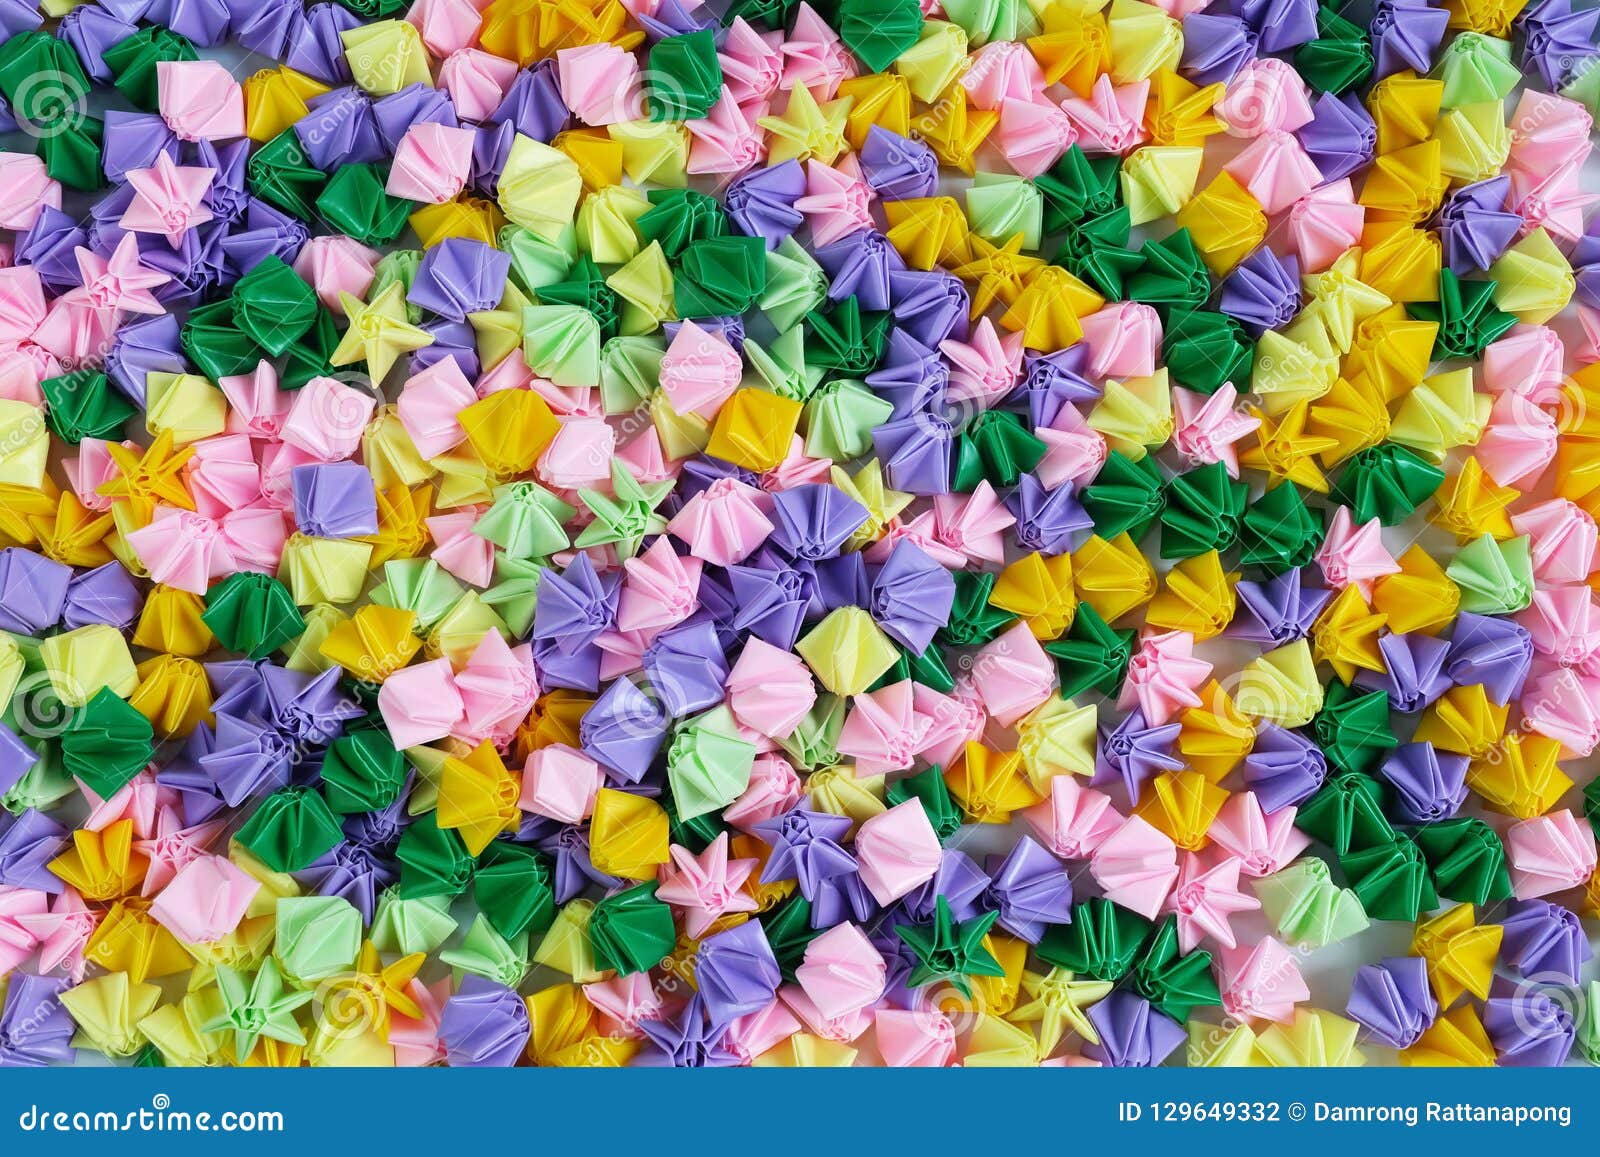 Bunte Origamisterne Oder Blumen Die Papier Falten Stockfoto Bild Von Blumen Papier